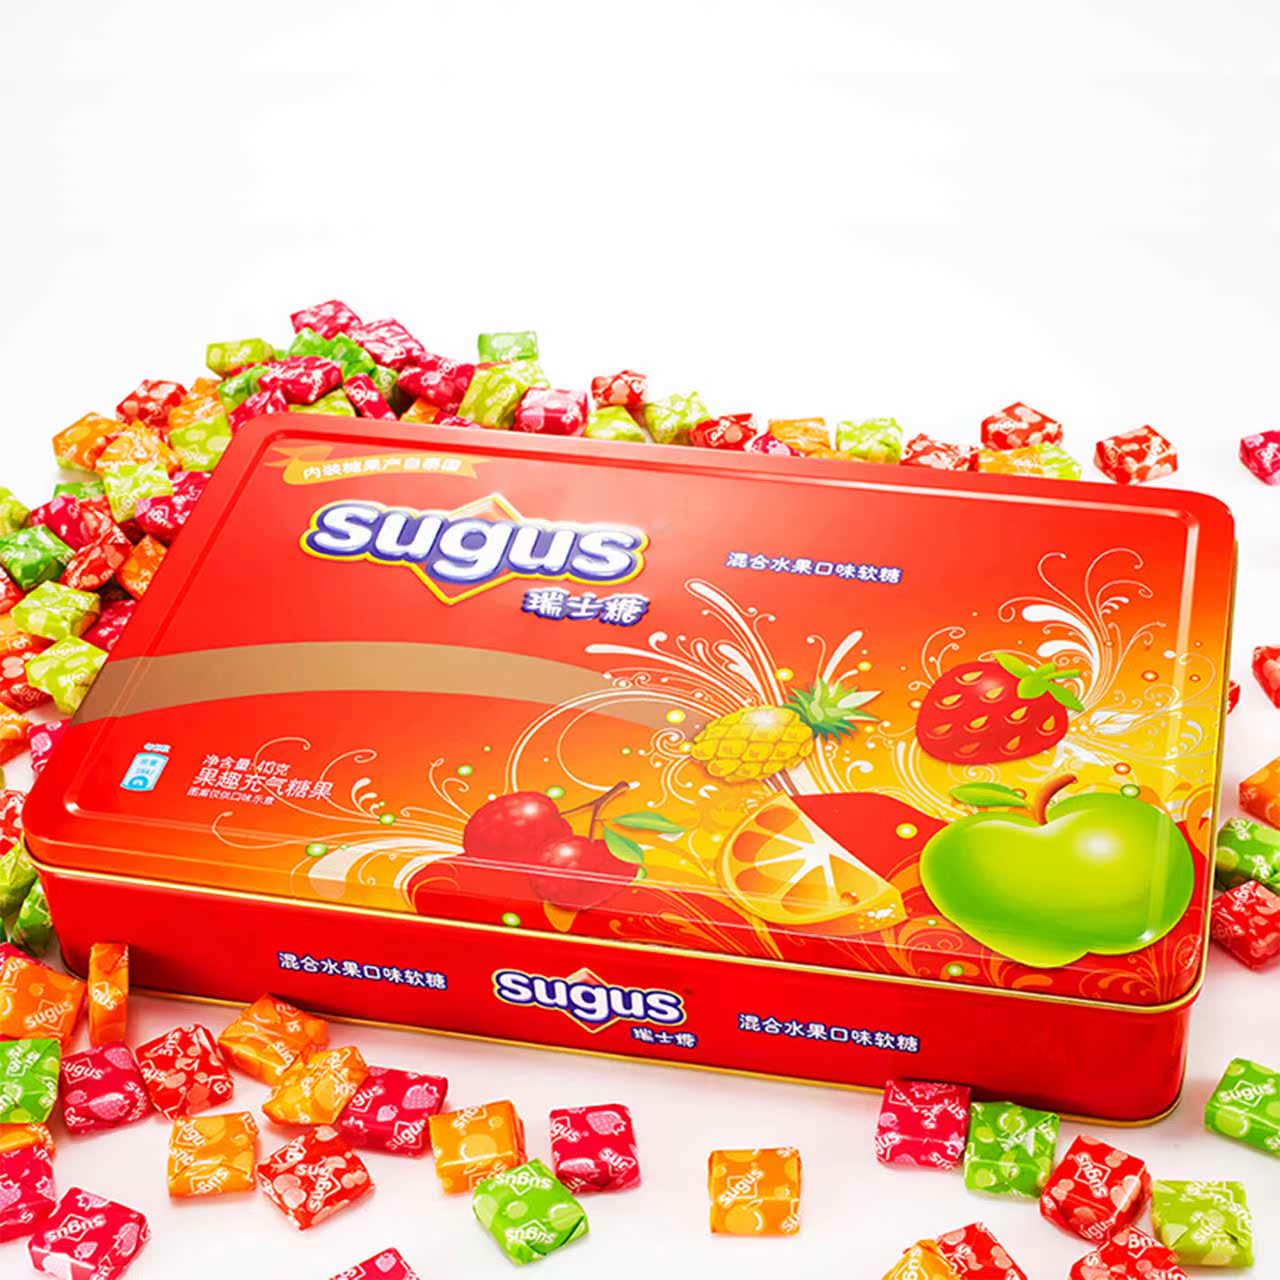 【天猫超市】箭牌sugus瑞士糖混合水果口味 软糖 413g*2盒